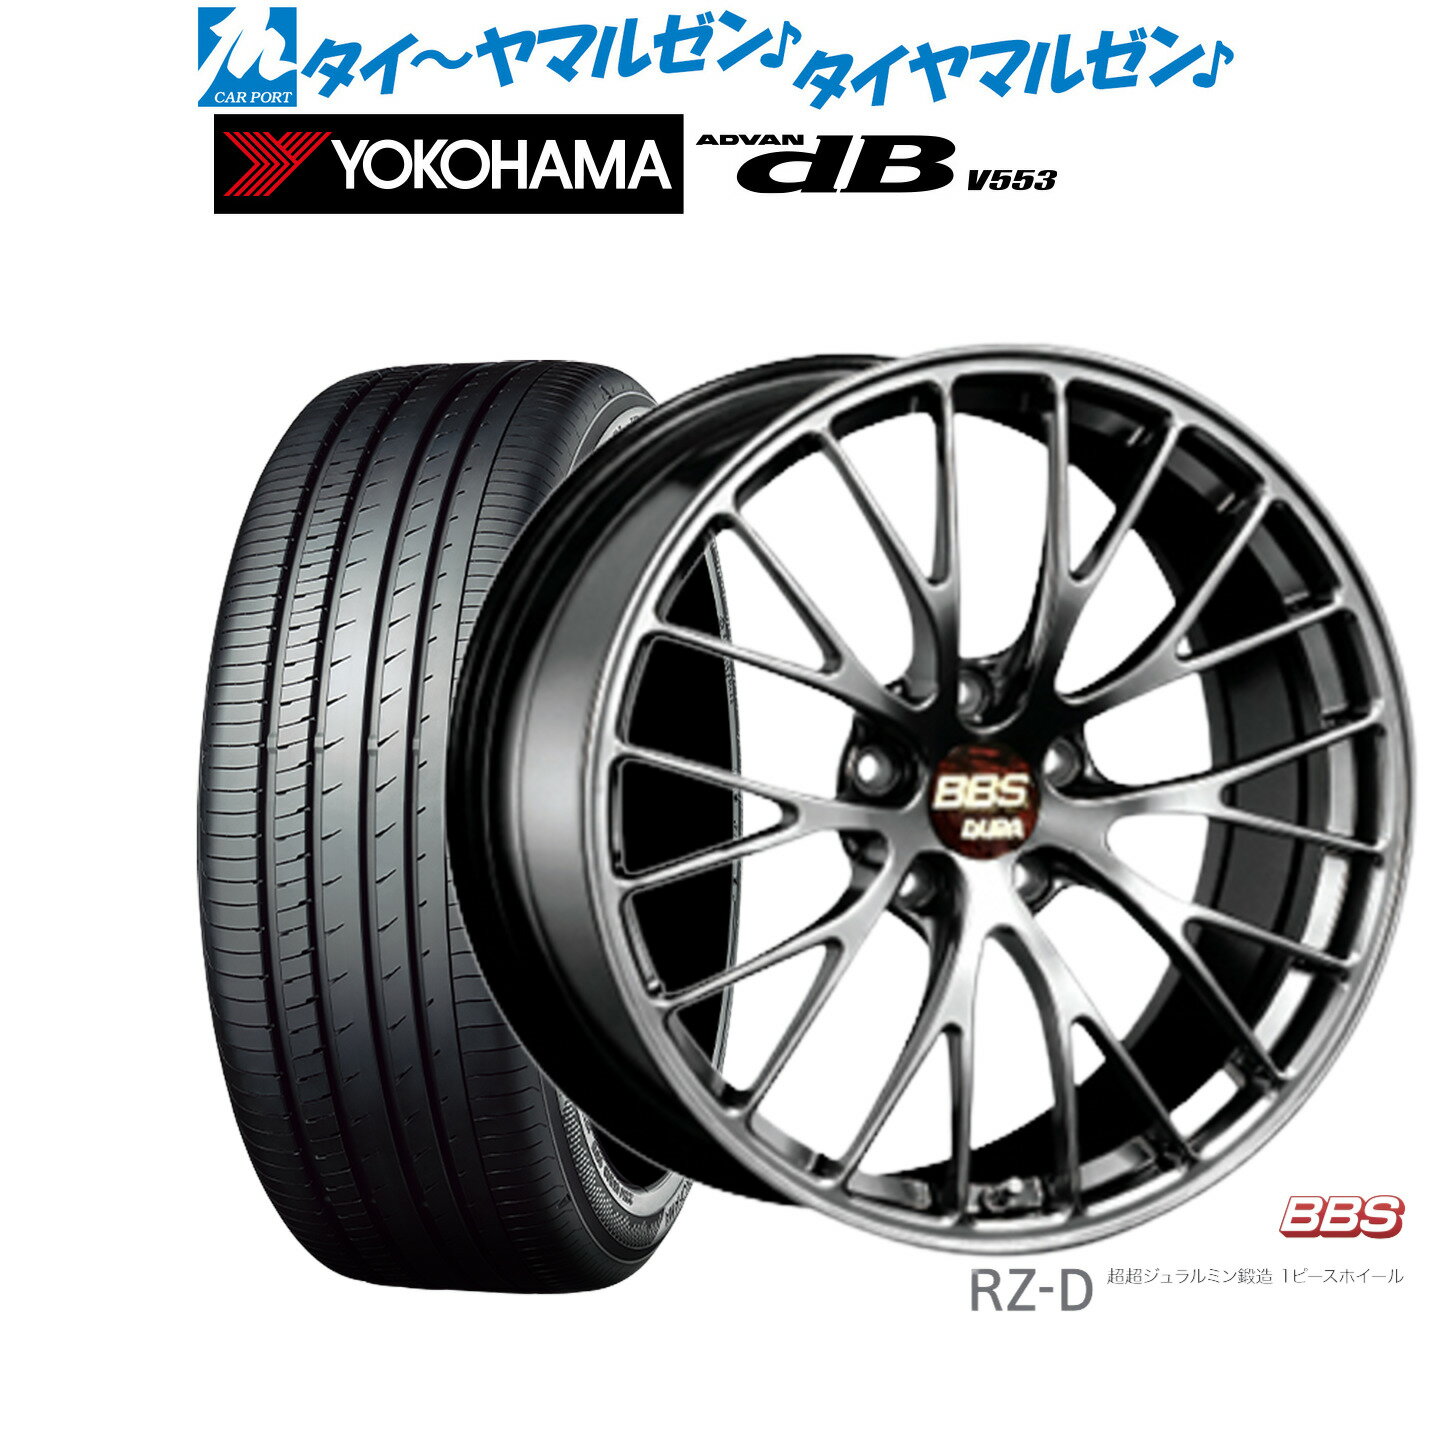 [5/20]割引クーポン配布新品 サマータイヤ ホイール4本セットBBS JAPAN RZ-D19インチ 8.5Jヨコハマ ADVAN アドバン dB(V553)245/40R19